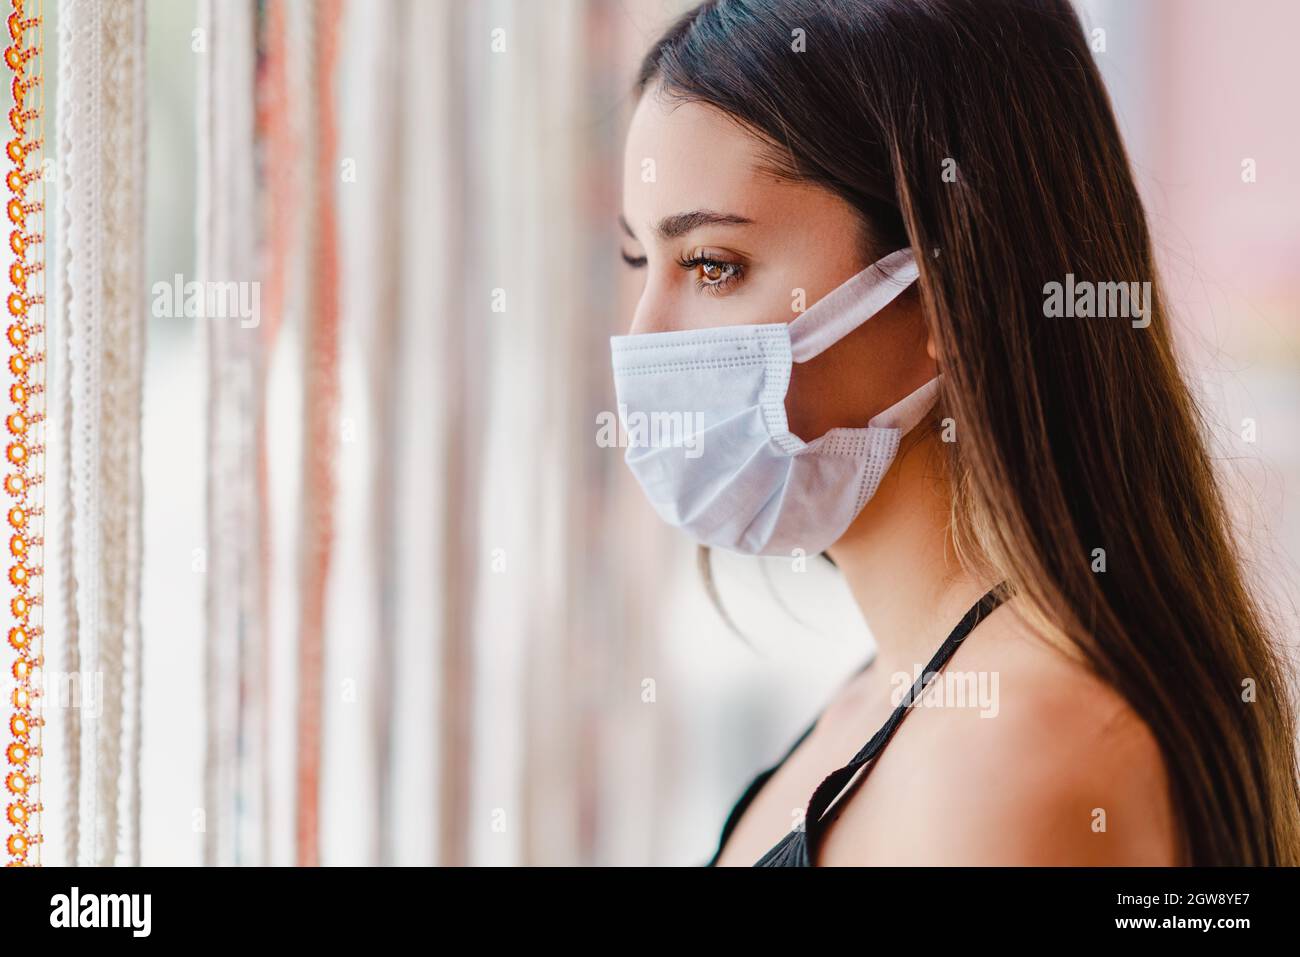 La giovane donna è in piedi e guardando dalla sala finestra con una maschera di protezione sul suo viso. Interruzione del virus Corona. Foto di alta qualità Foto Stock